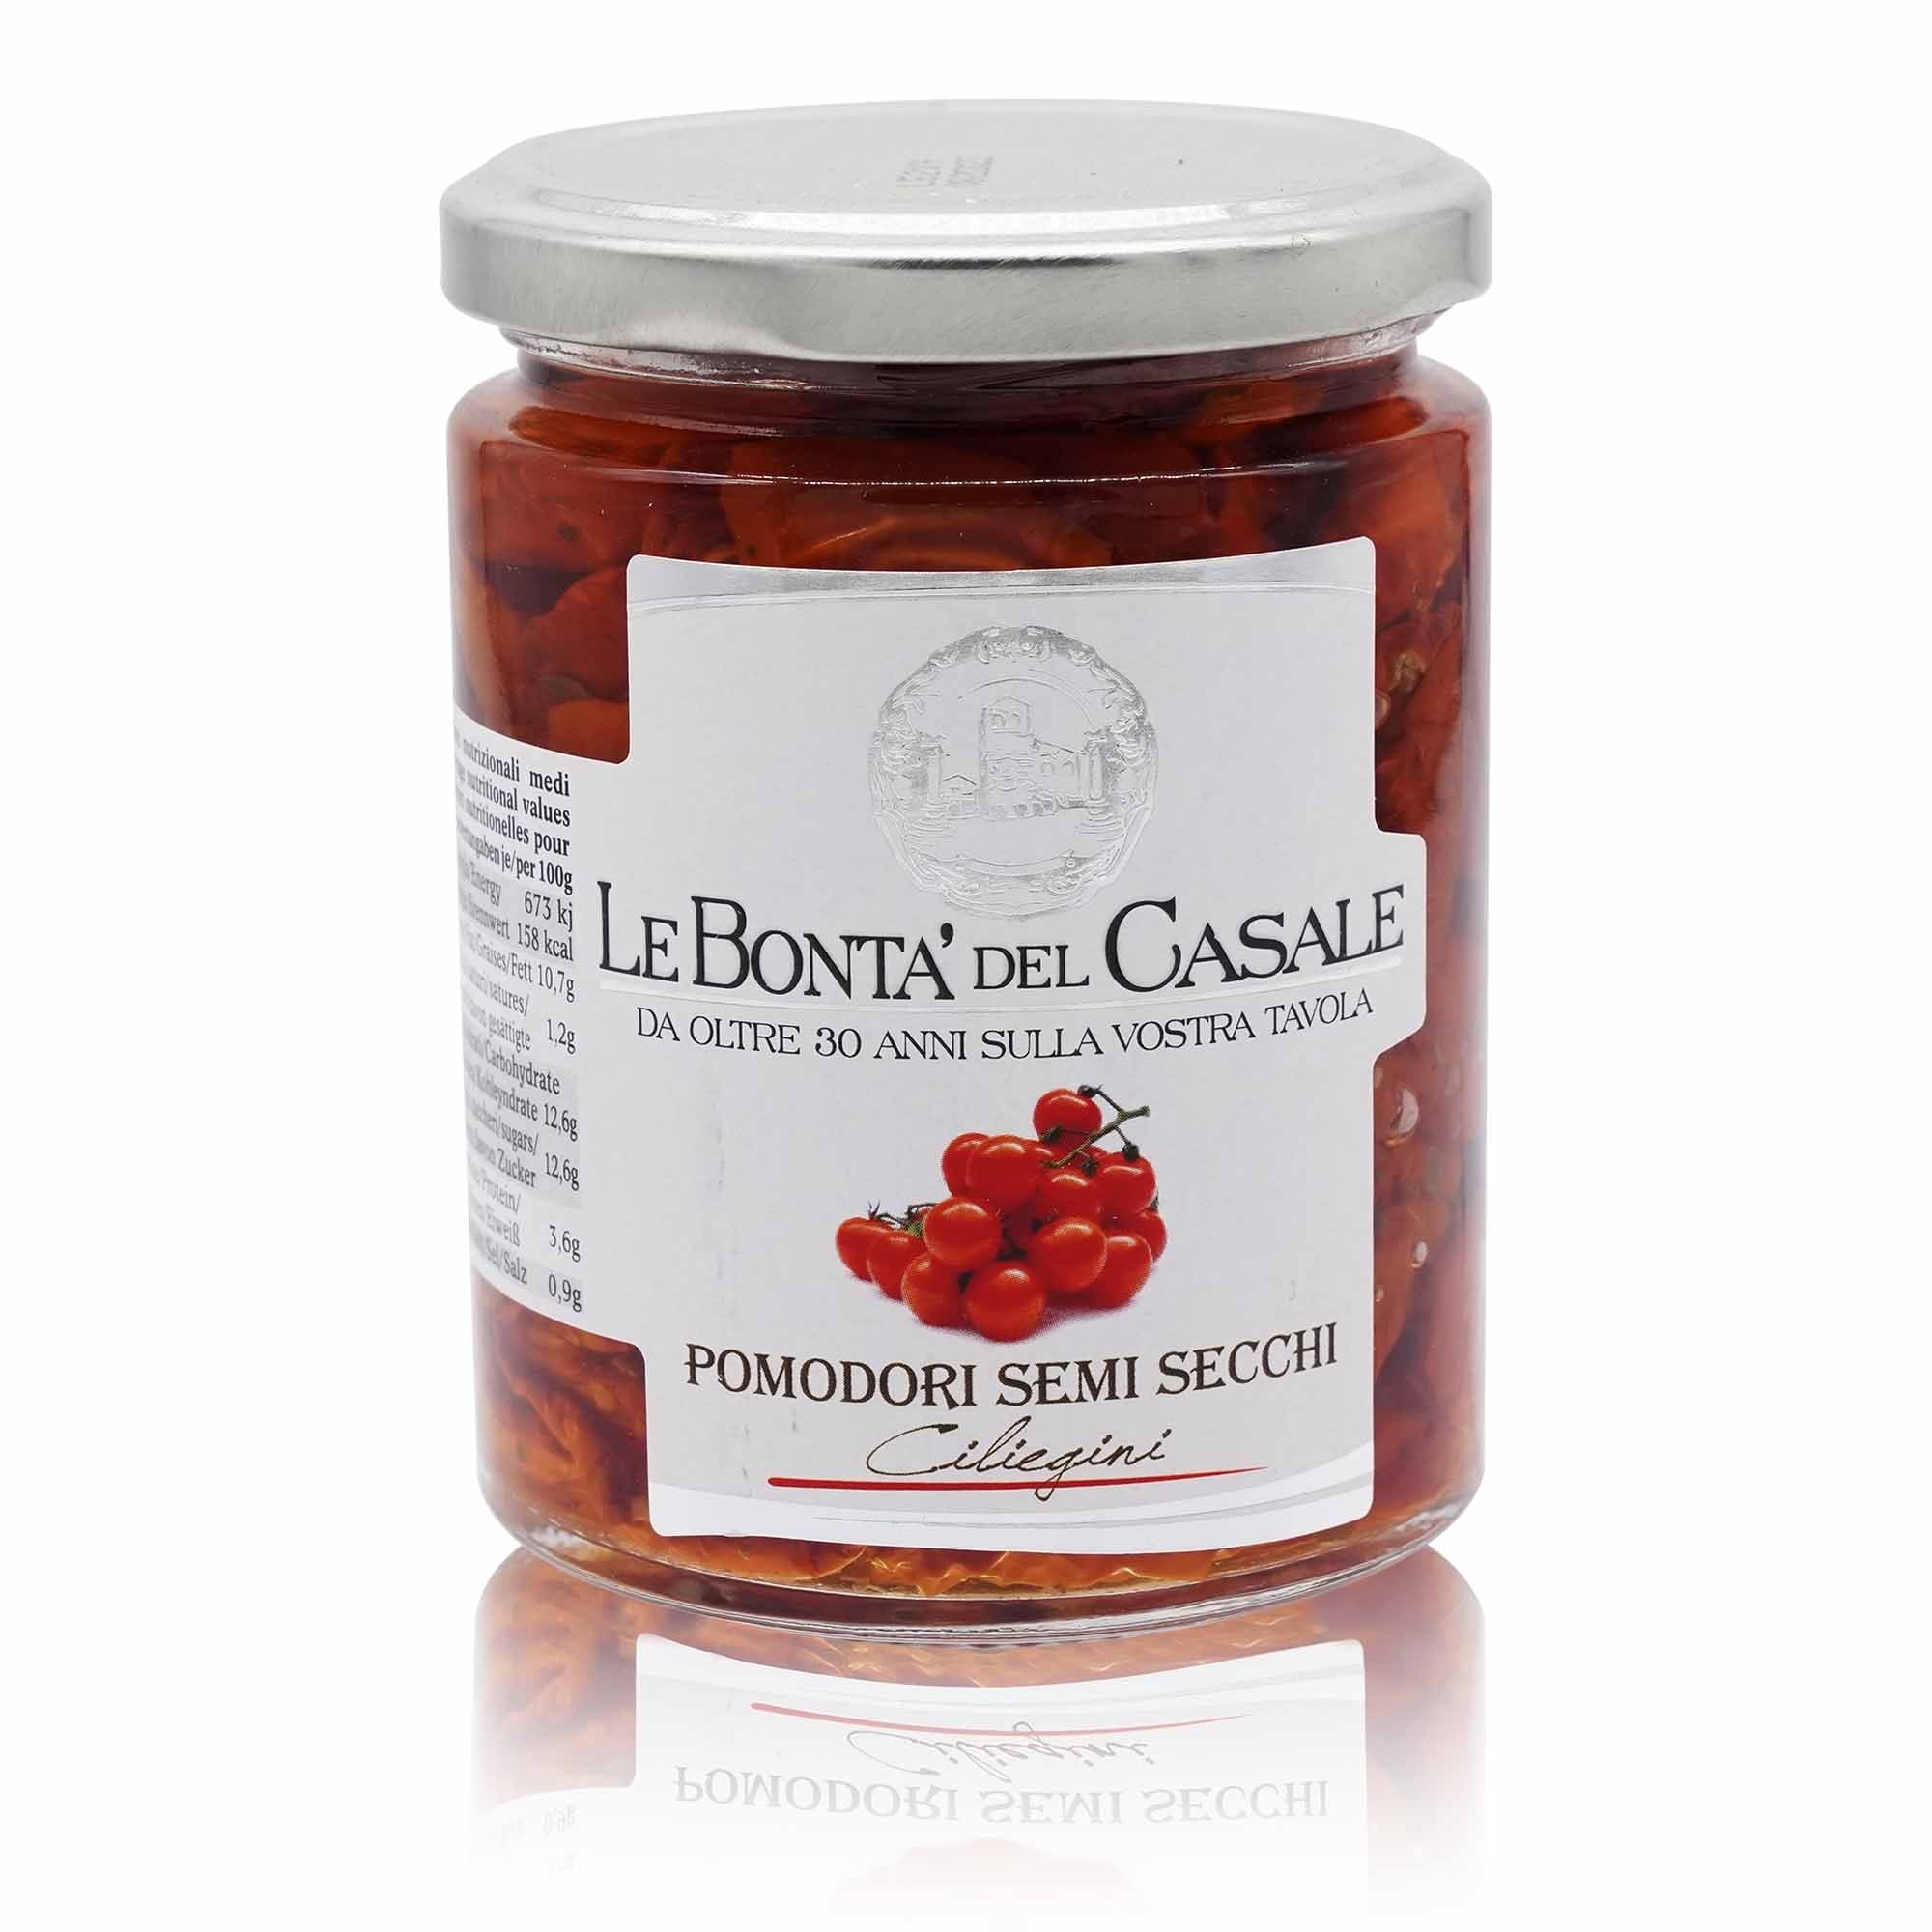 LE BONTÀ DEL CASALE Pomodori semi secchi – Halbtgetrocknete Cherrytomaten - 0,28kg